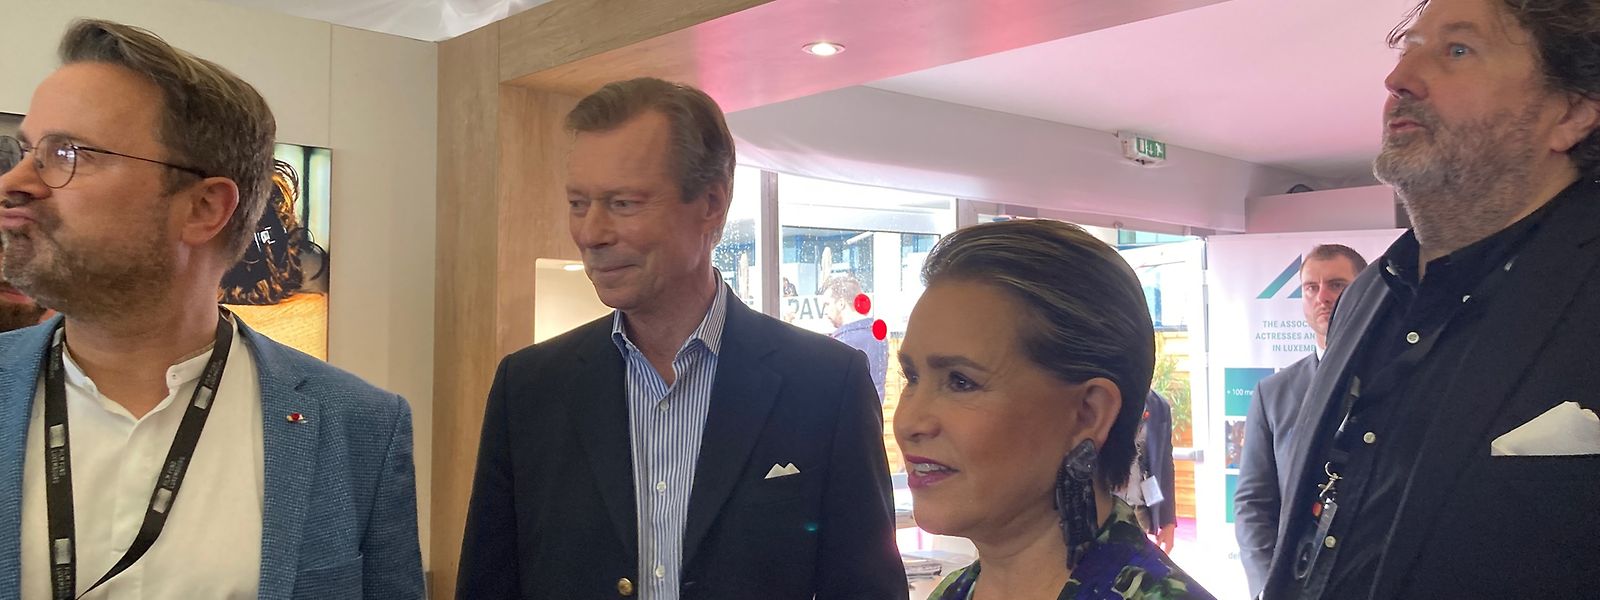 Premierminister Xavier Bettel (links), das großherzogliche Paar und Guy Daleiden zu Gast im luxemburgischen Pavillon in Cannes.